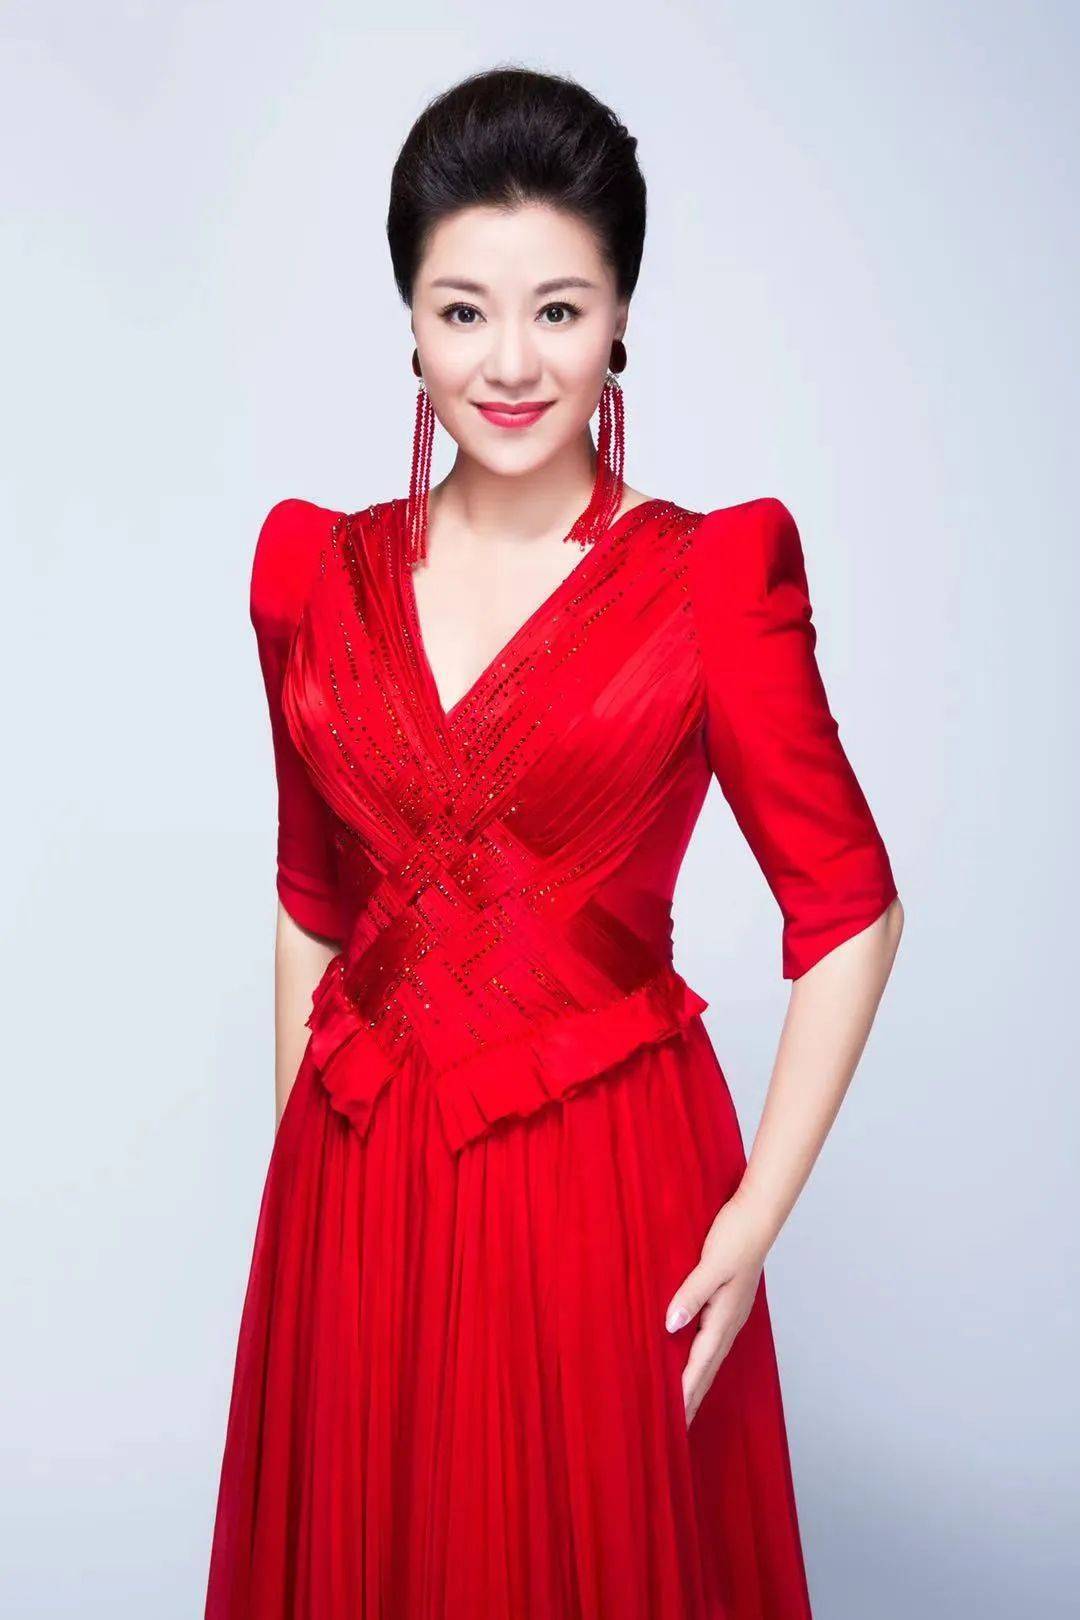 著名歌唱家王丽达倾情演唱北京广播电视台315晚会主题